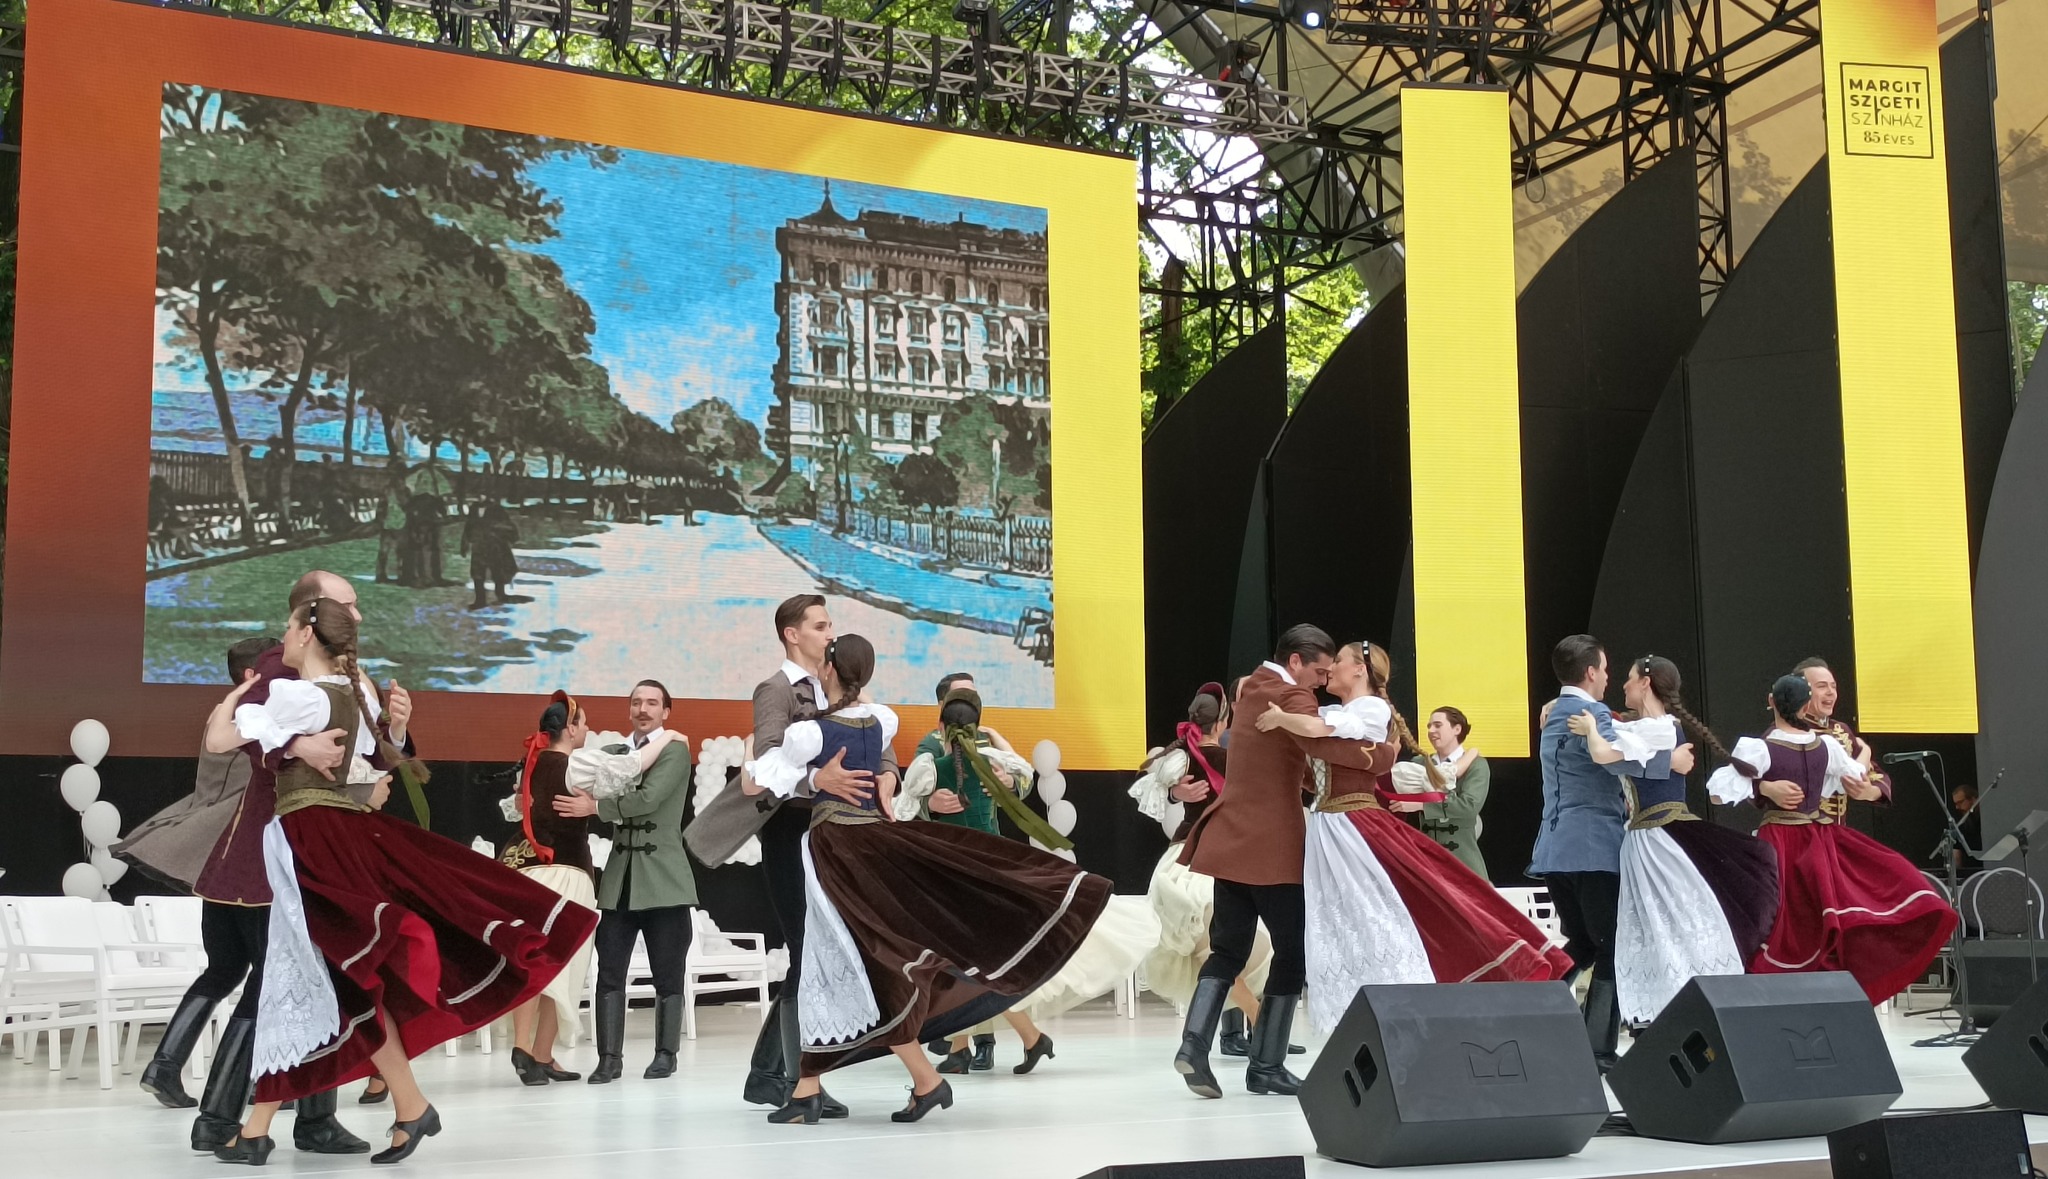 Több mint száz táncos lép fel a Petőfiről szóló előadásban a Margitszigeten